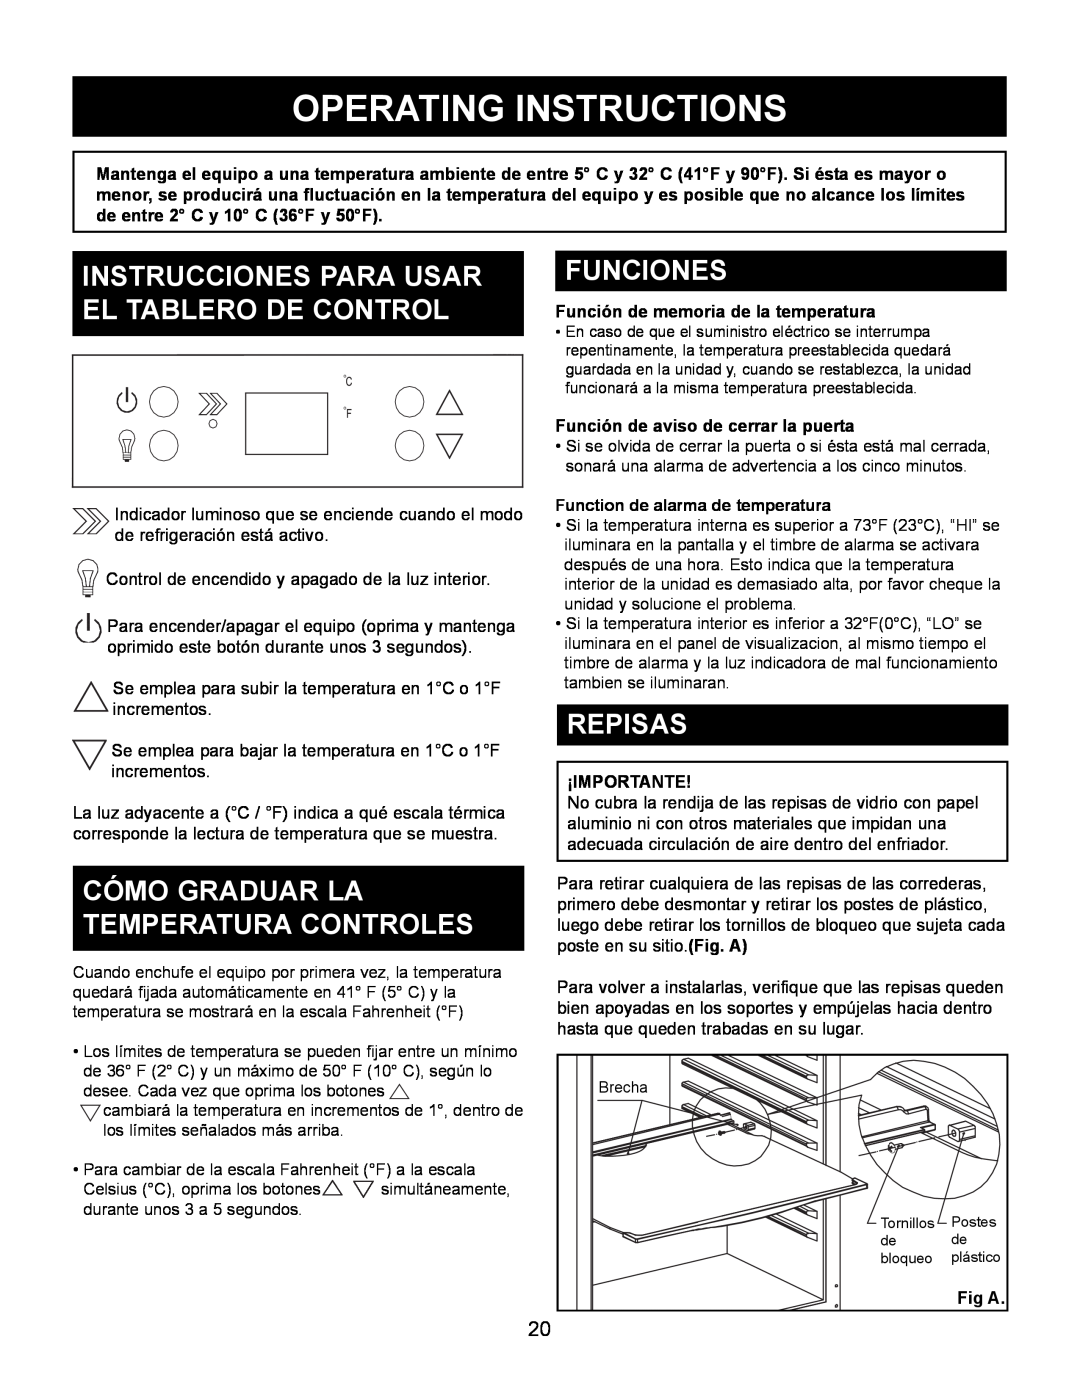 Danby DAR154BLSST Instrucciones Para Usar El Tablero De Control, Cómo Graduar La Temperatura Controles, Funciones, Repisas 